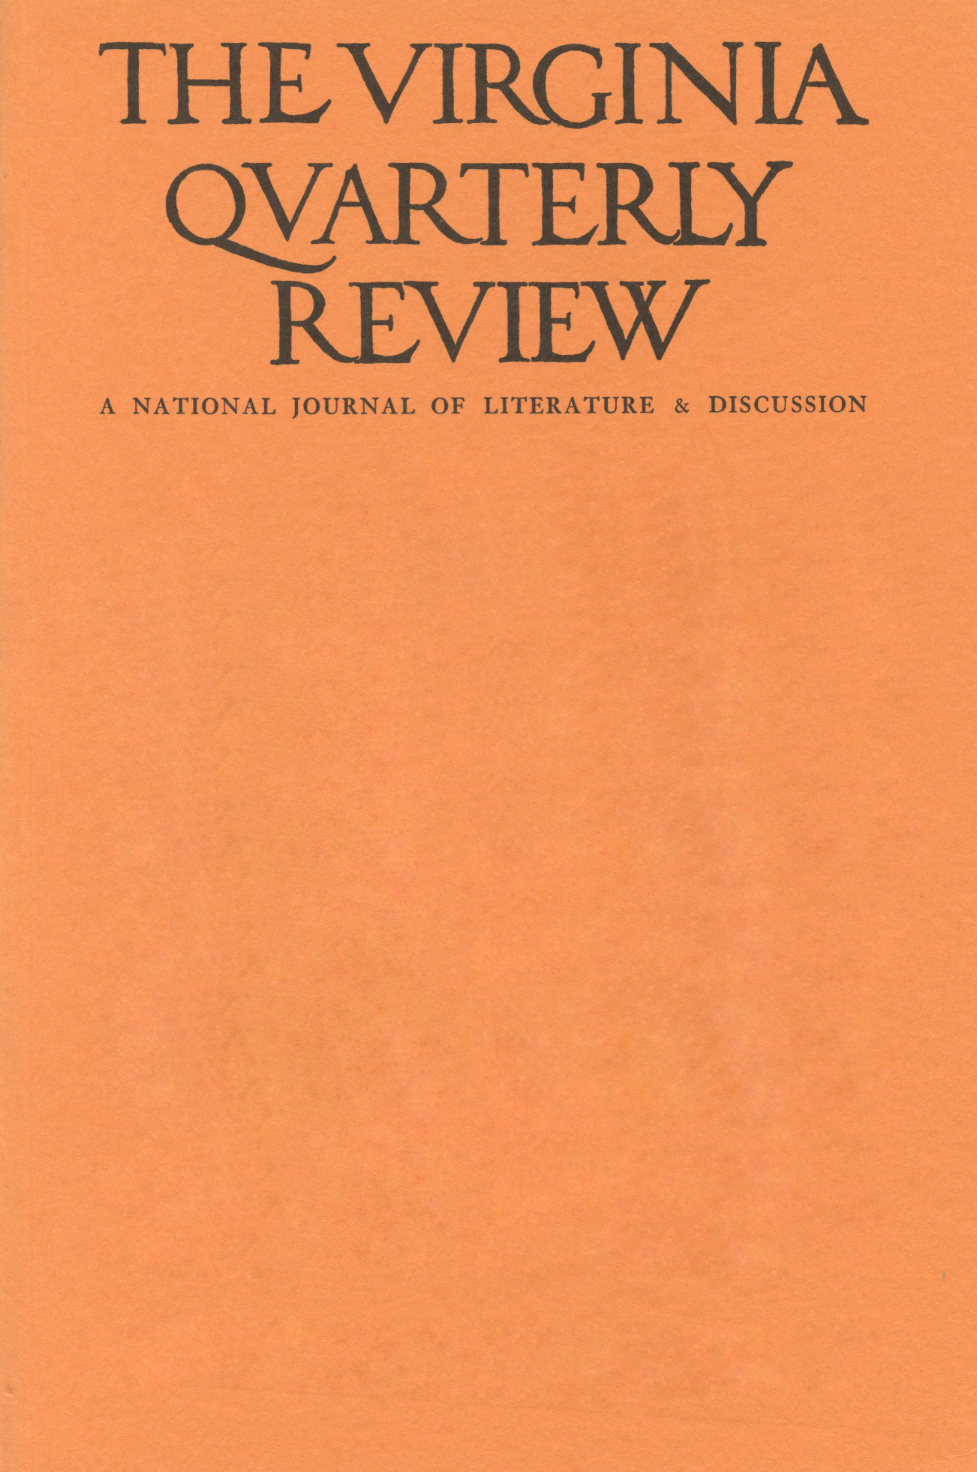 Virginia Quarterly Review, Winter 1975 cover